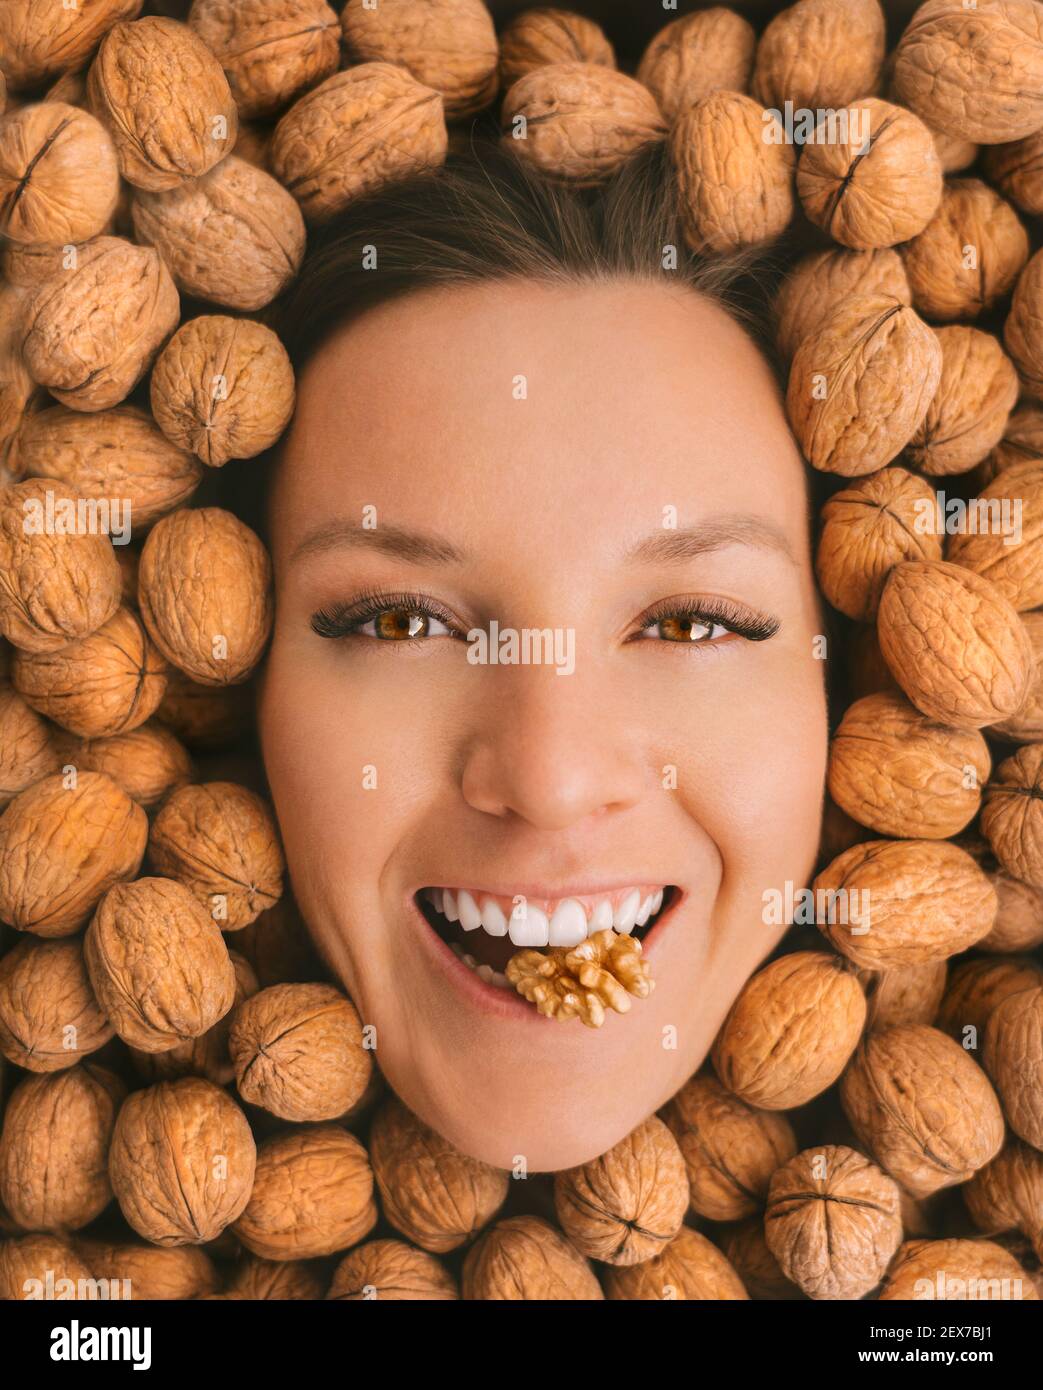 nut white girl face